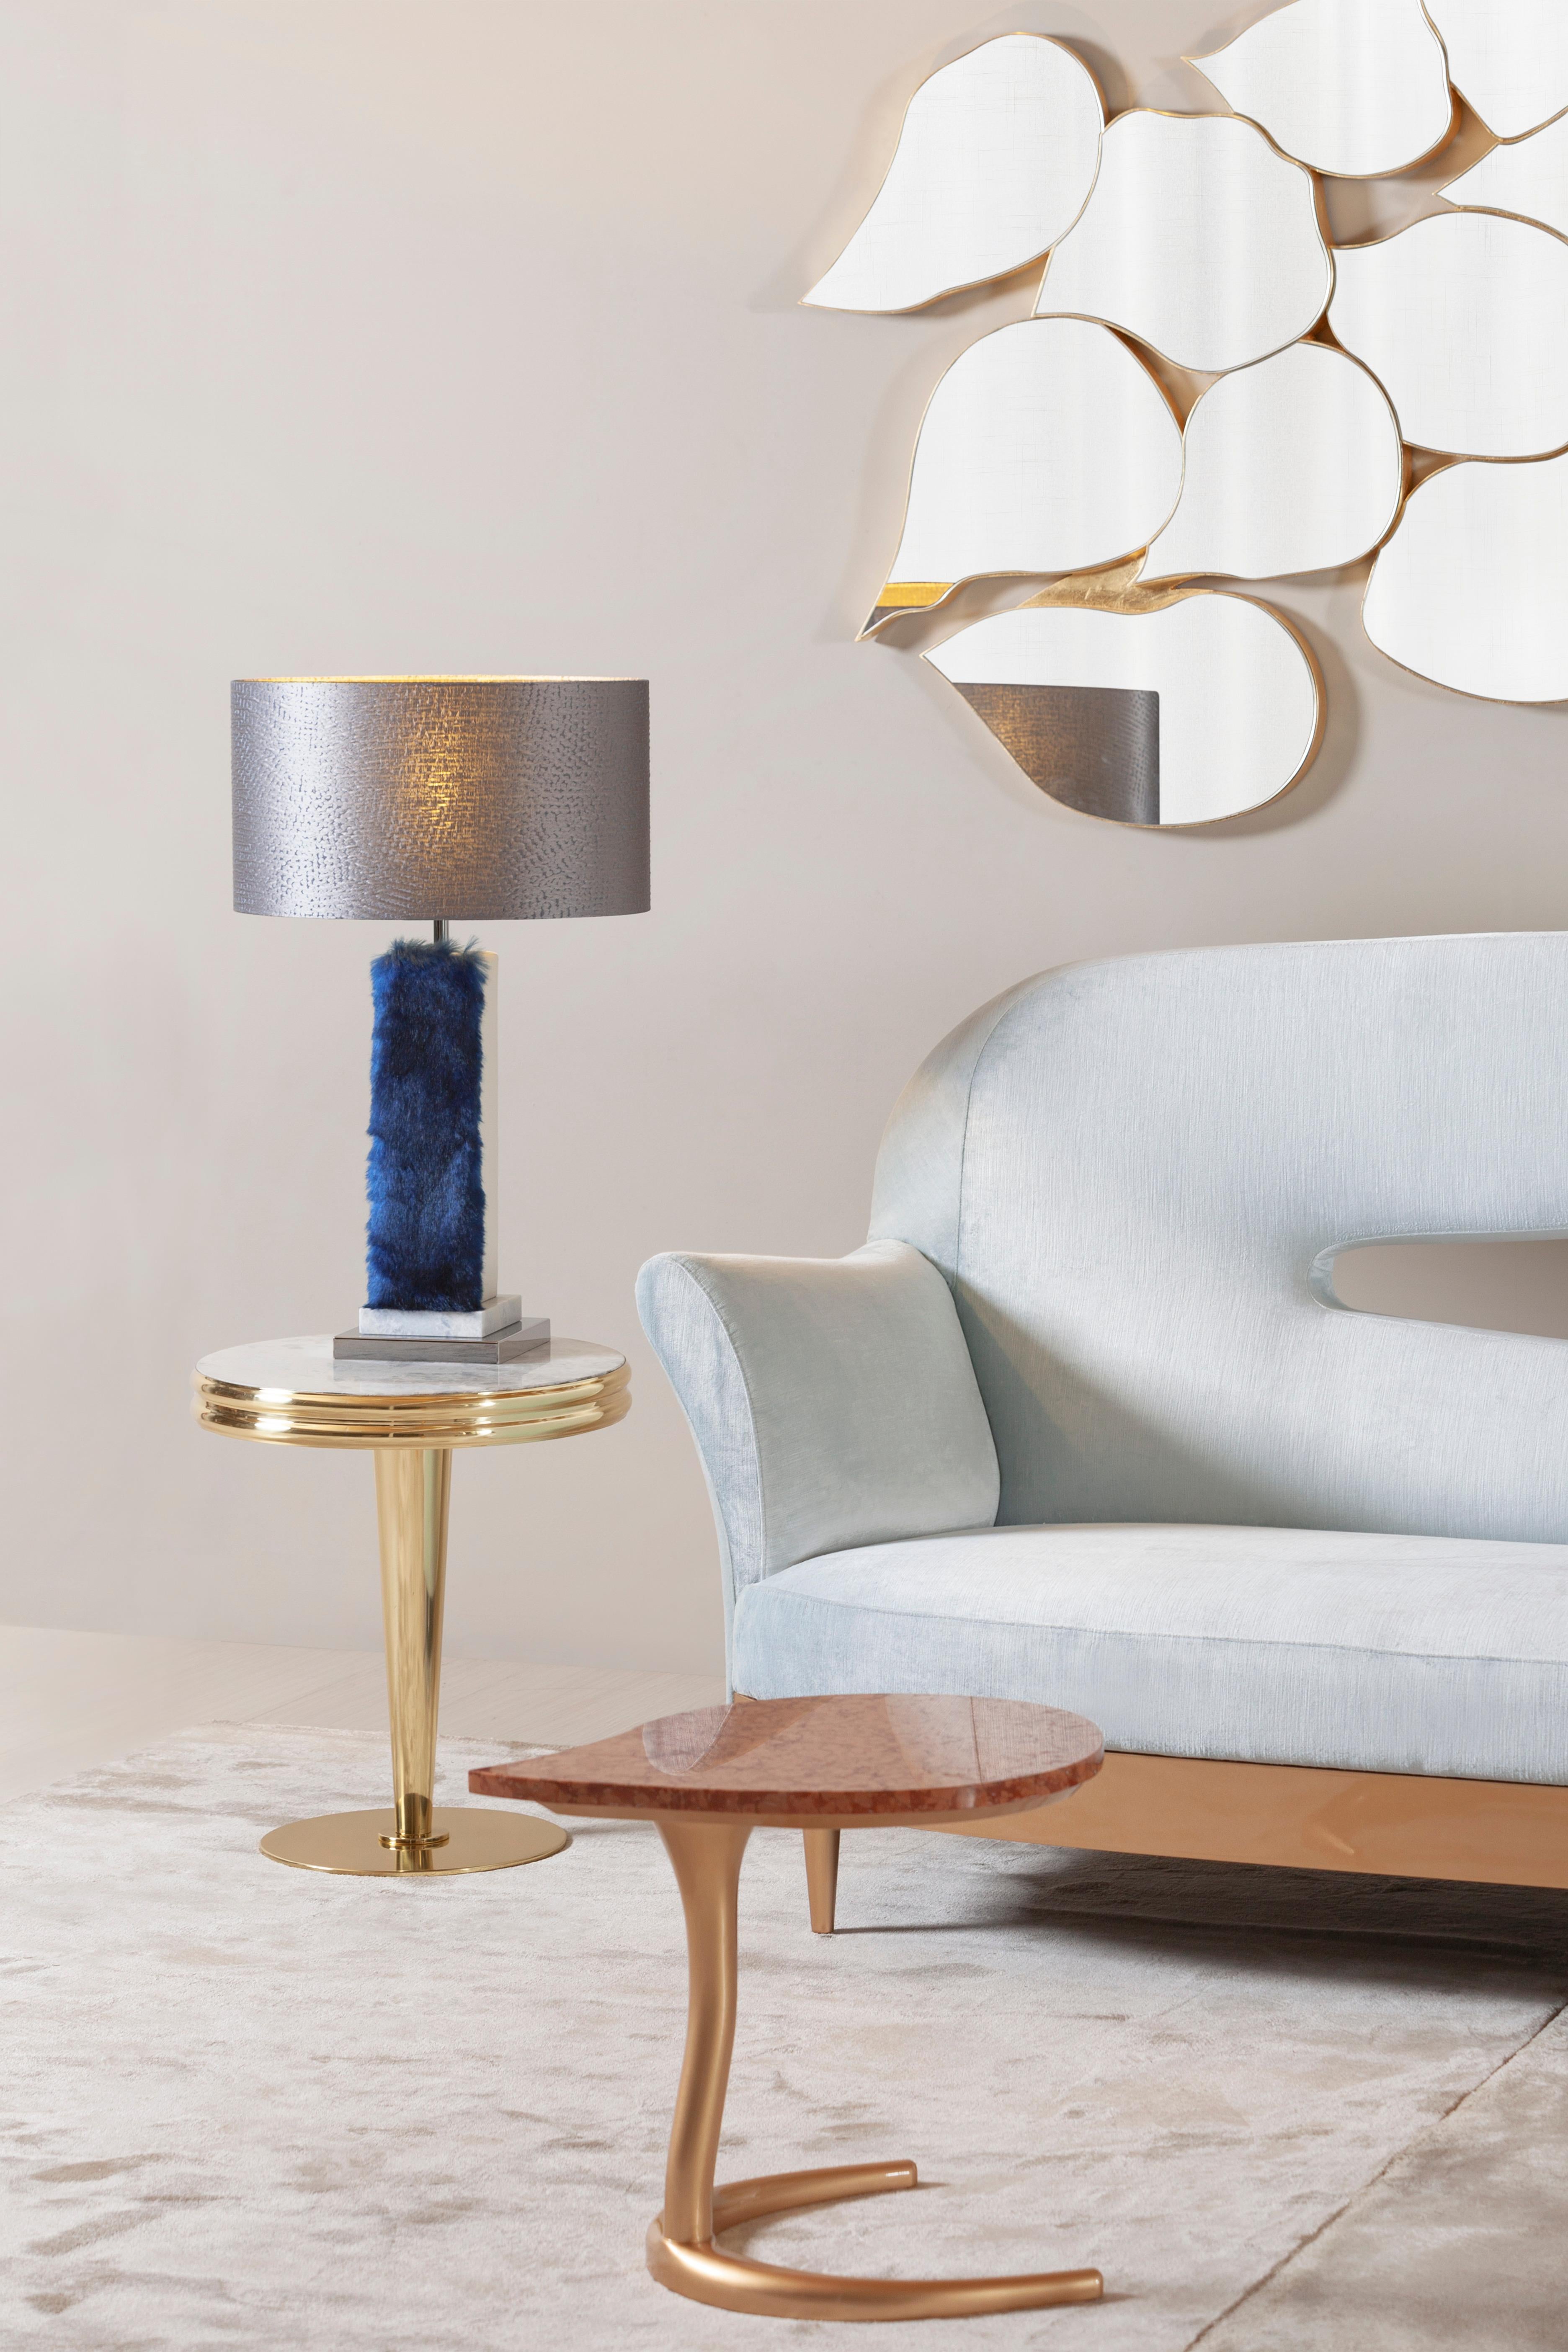 Lot de 2 lampes de table Simões, collection moderne, fabriquées à la main au Portugal - Europe par GF Modern.

Simões est une lampe de table élégante et un complément attrayant pour une maison moderne. Le marbre Blue Crystal et l'acier inoxydable se